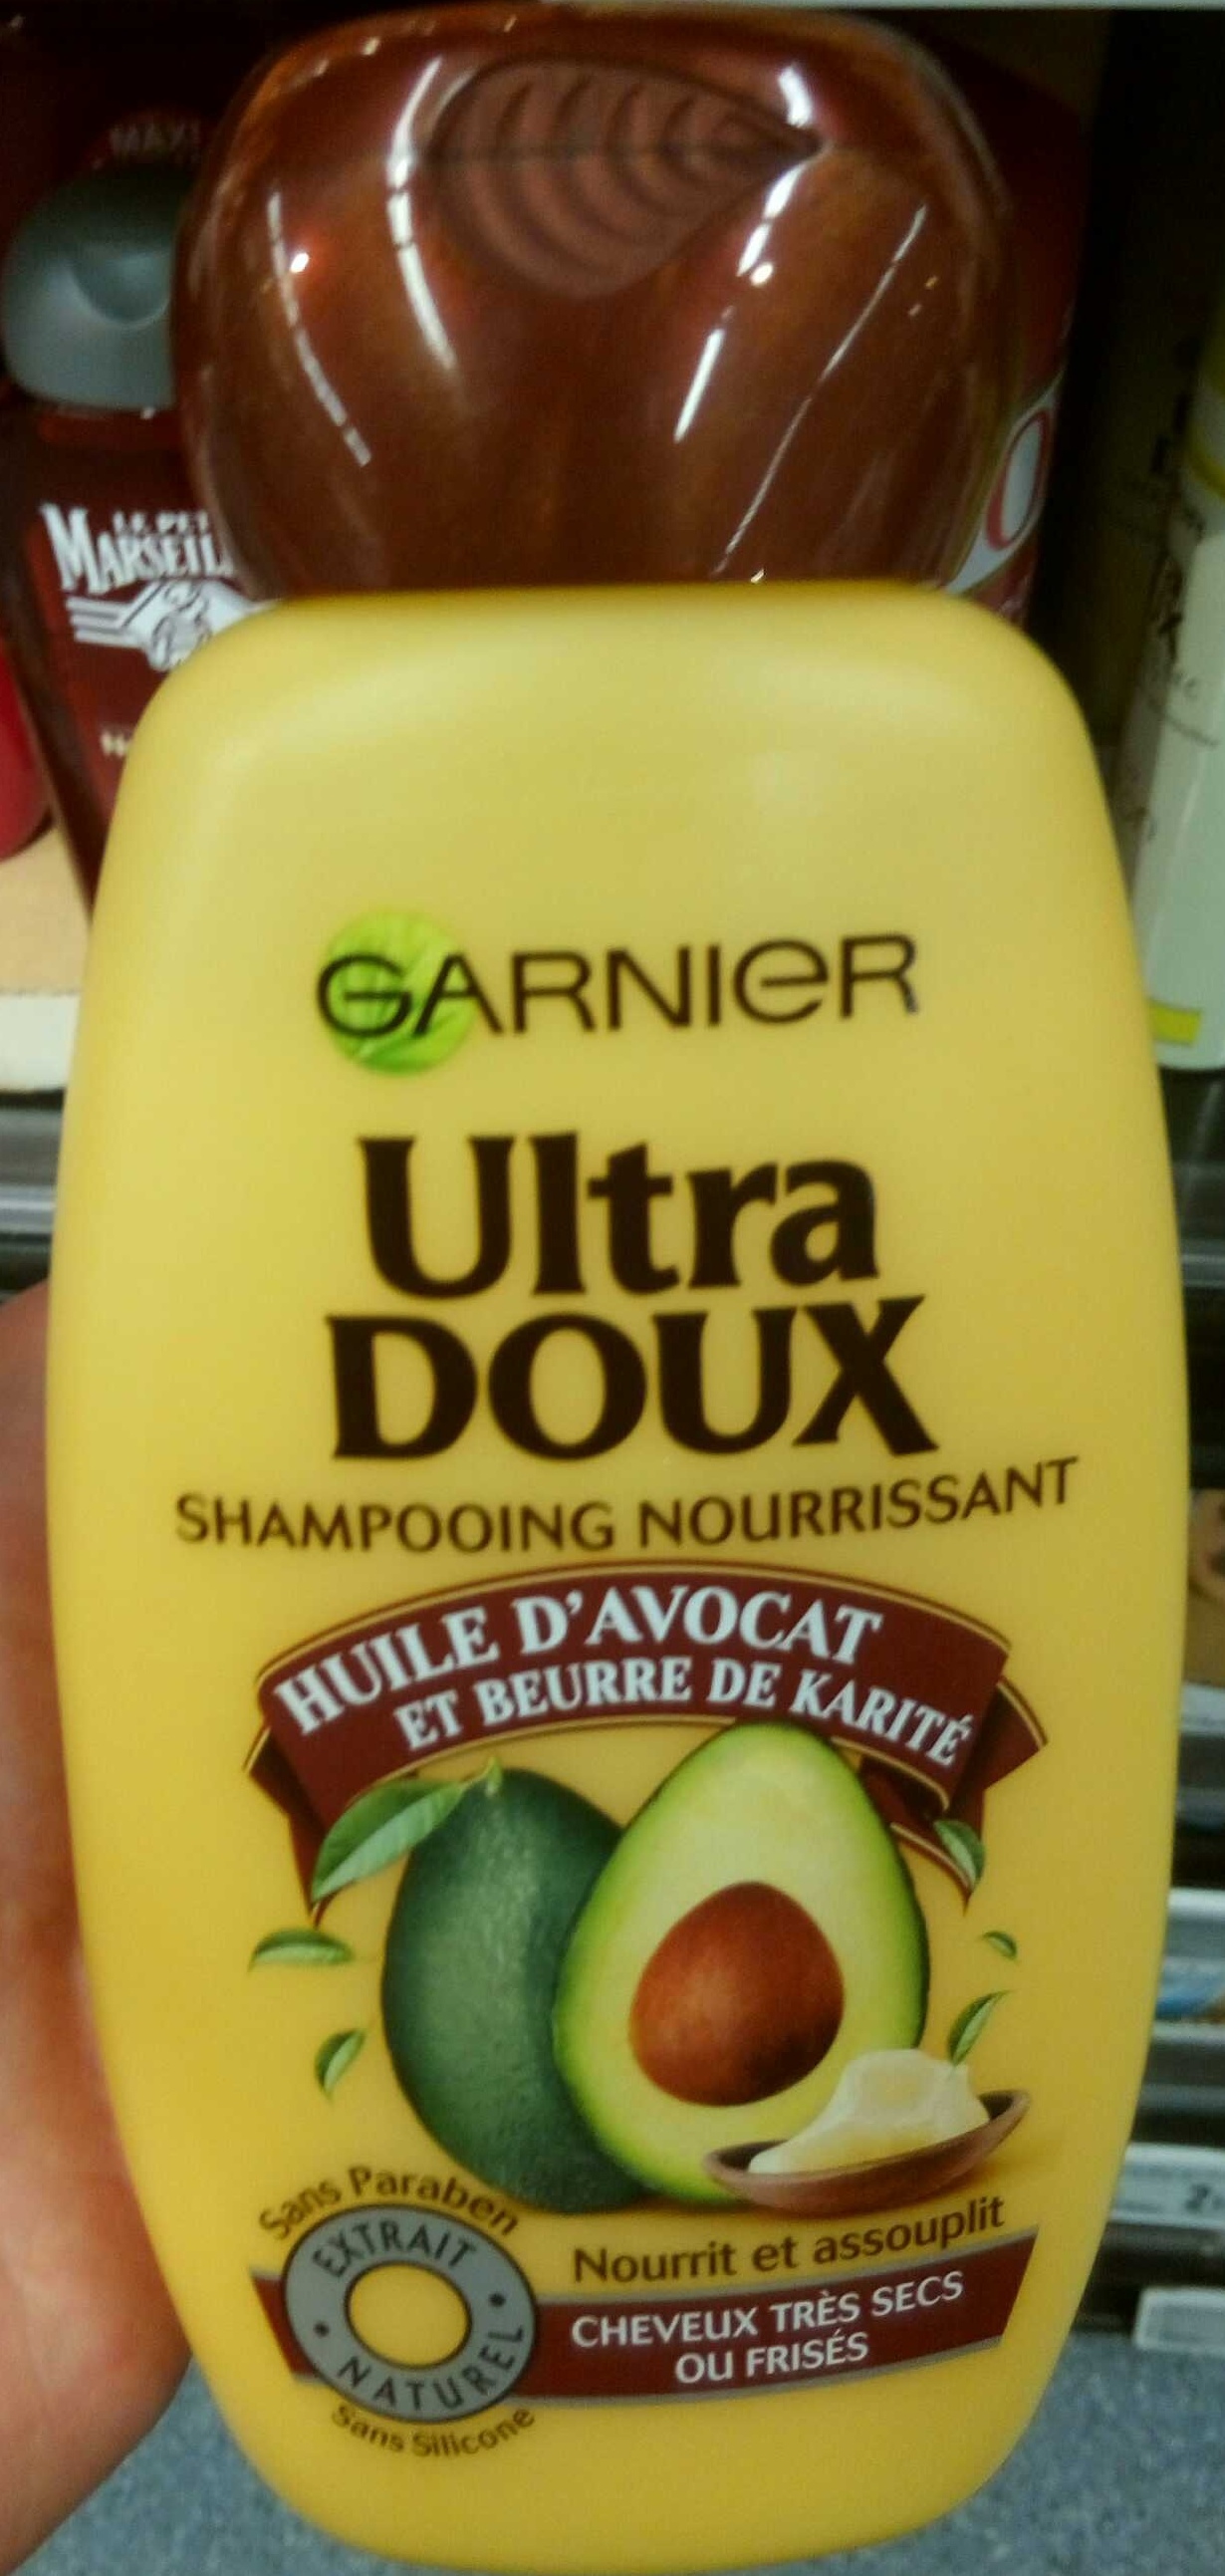 Ultra Doux Shampooing Nourrissant Huile d'Avocat et Beurre de Karité - Produit - fr